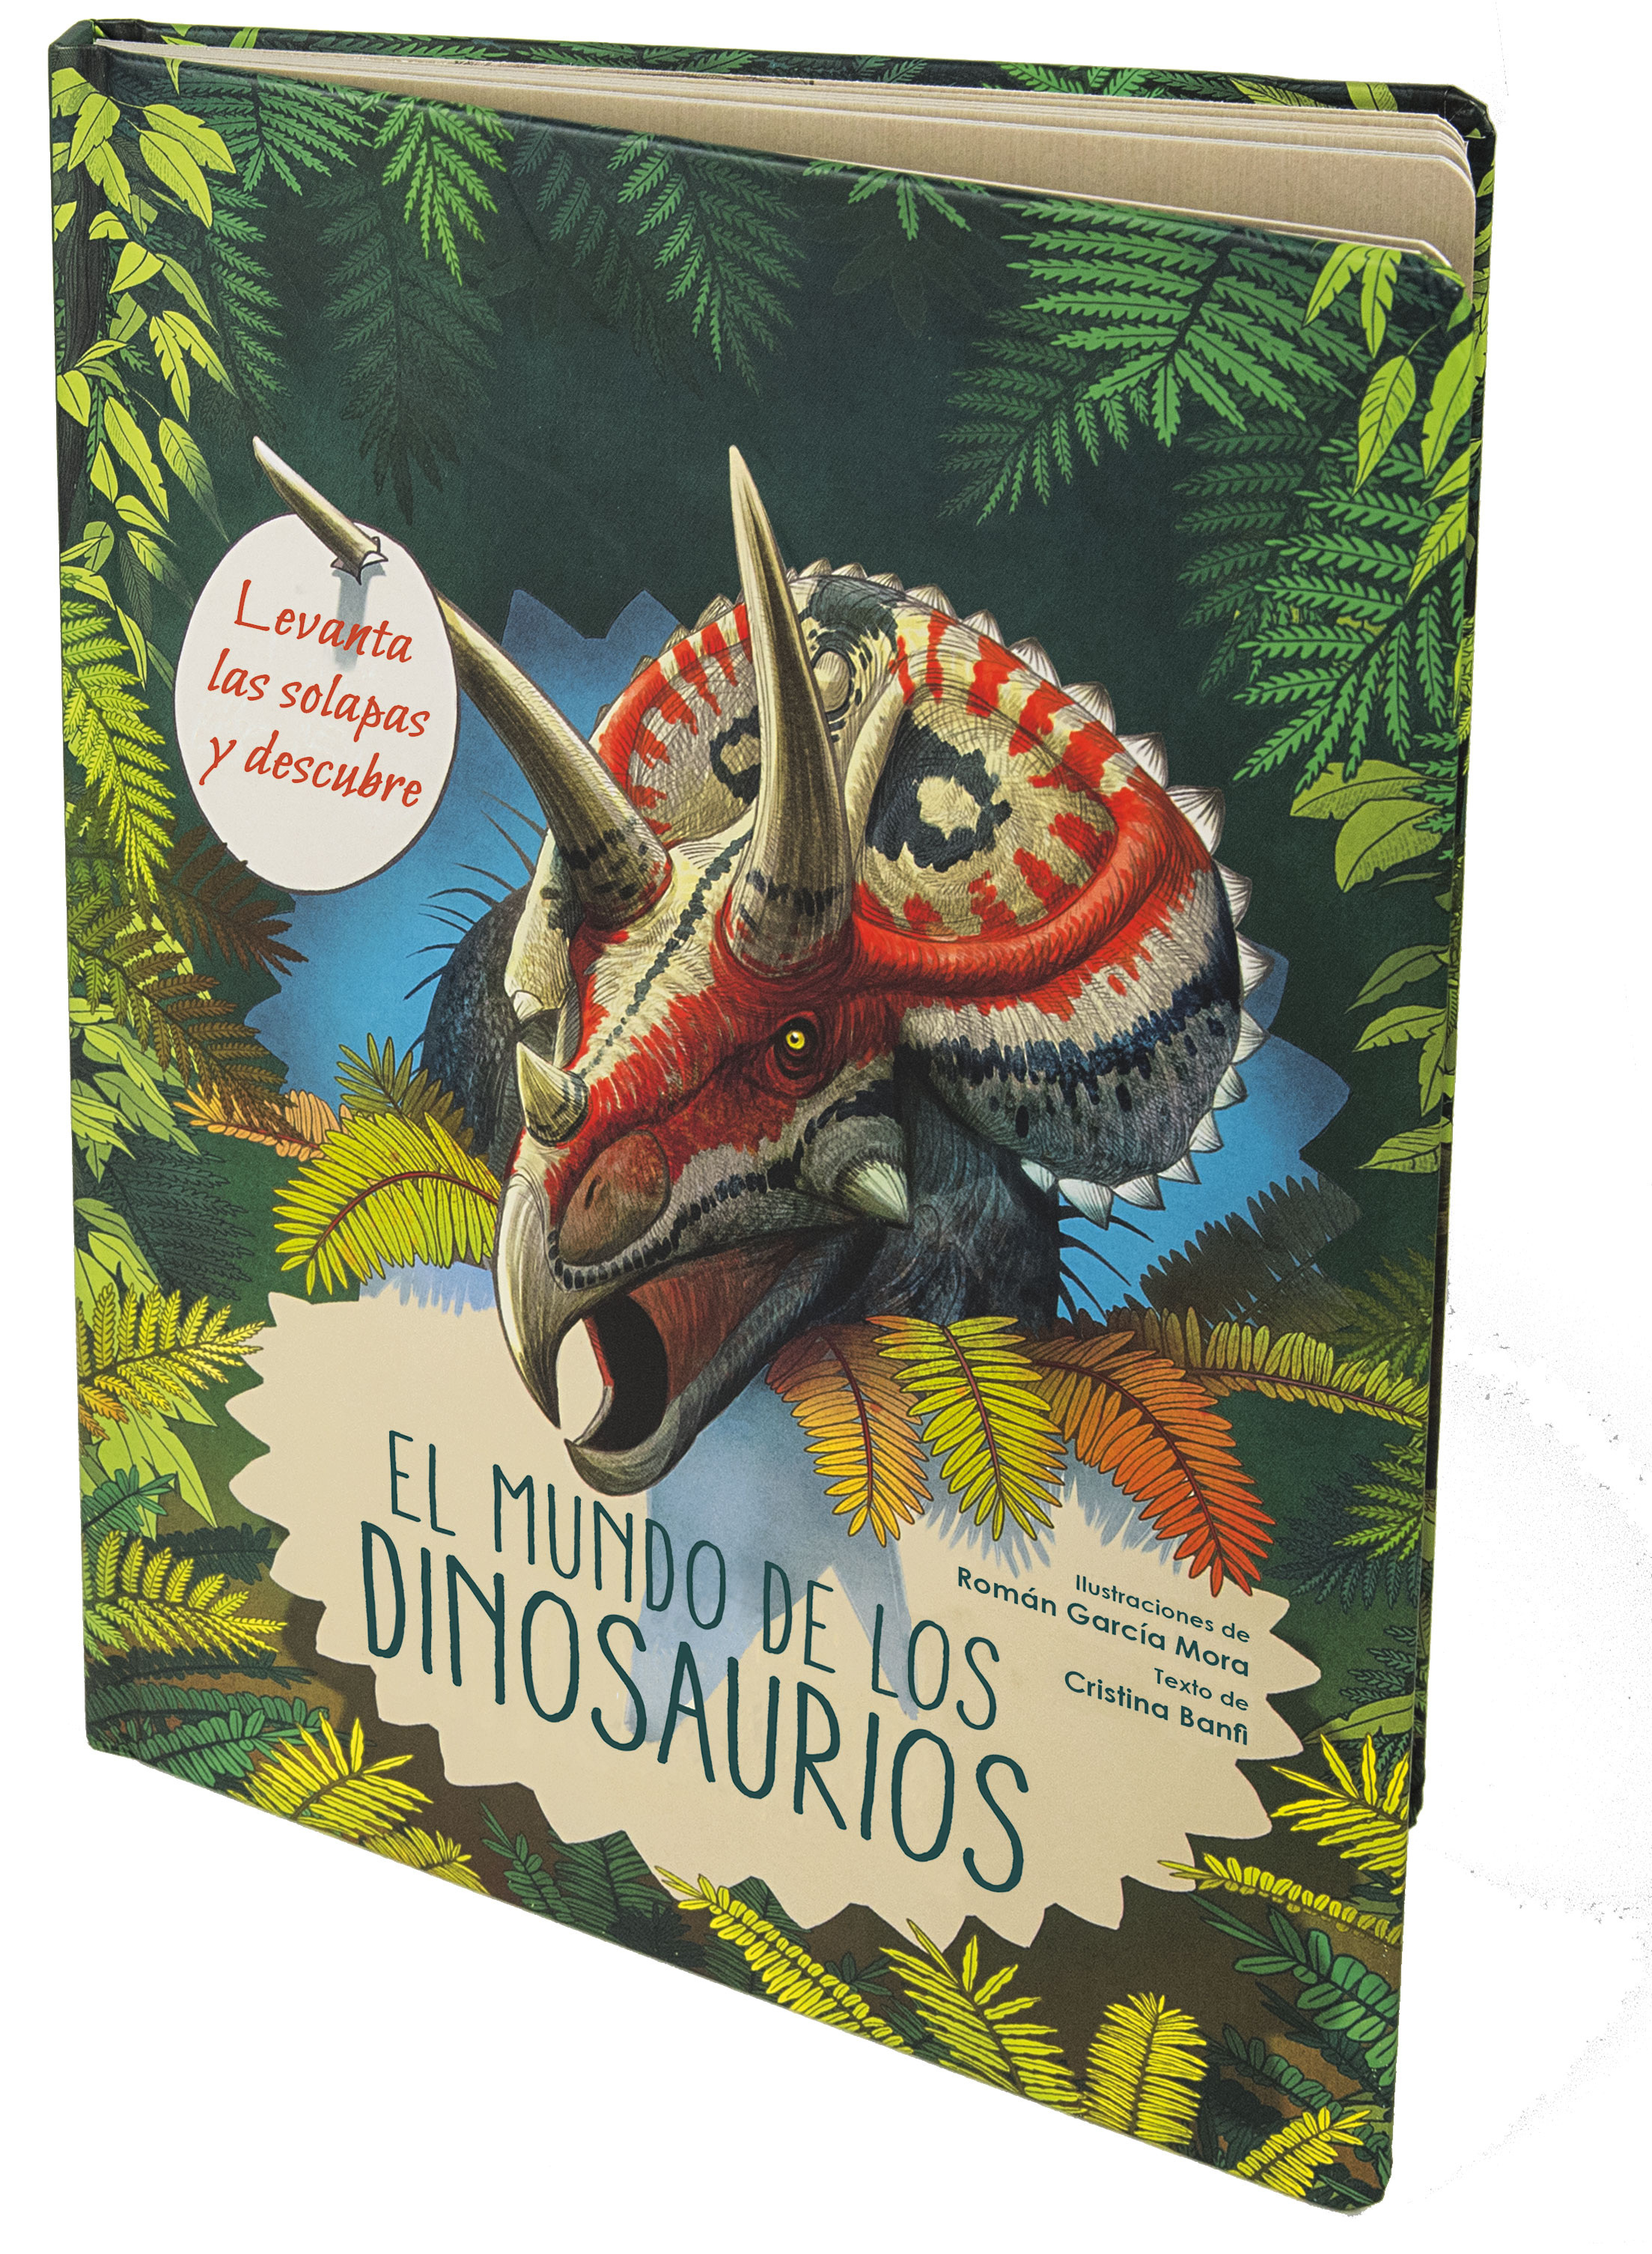 Portada de El mundo de los dinosaurios en libros originales